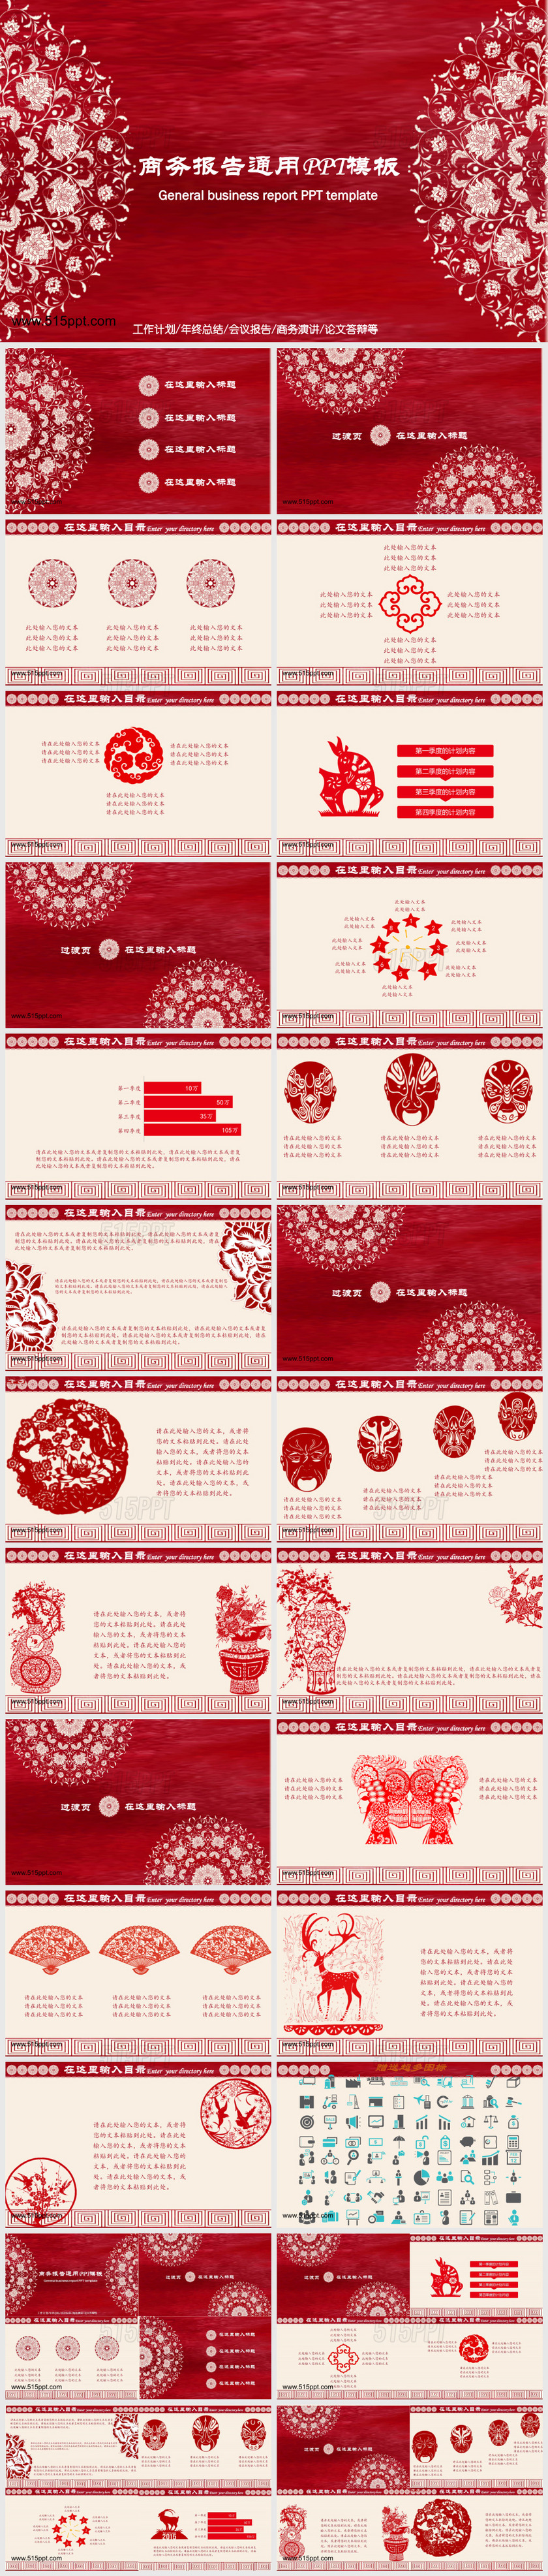 中国剪纸风格商务报告PPT模板